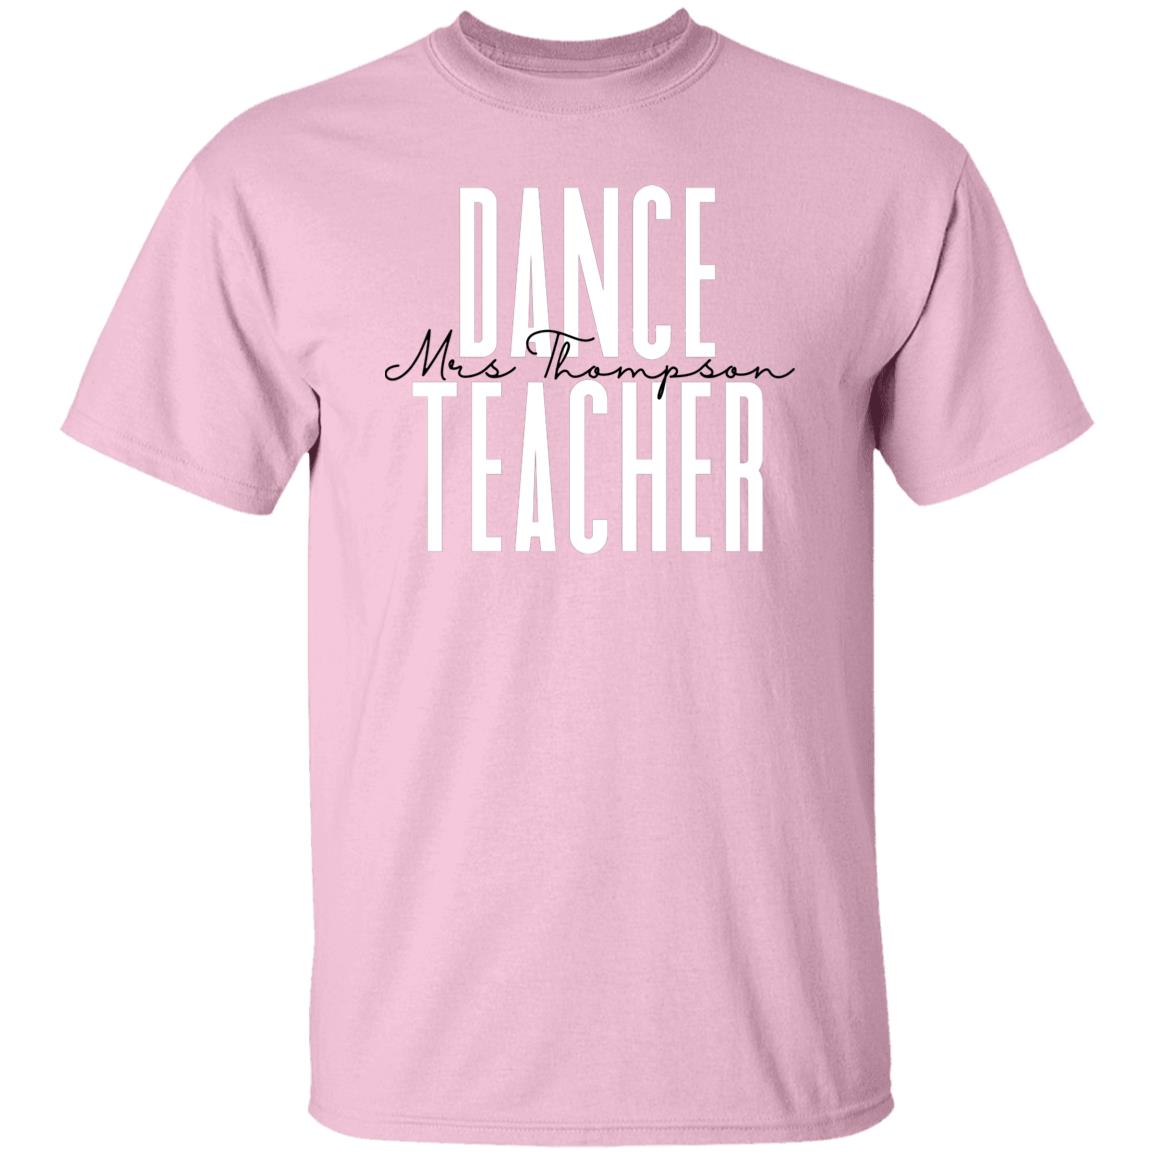 Personalized Dance teacher Unisex T-shirt Custom name dancer Sand Blue Pink-Family-Gift-Planet